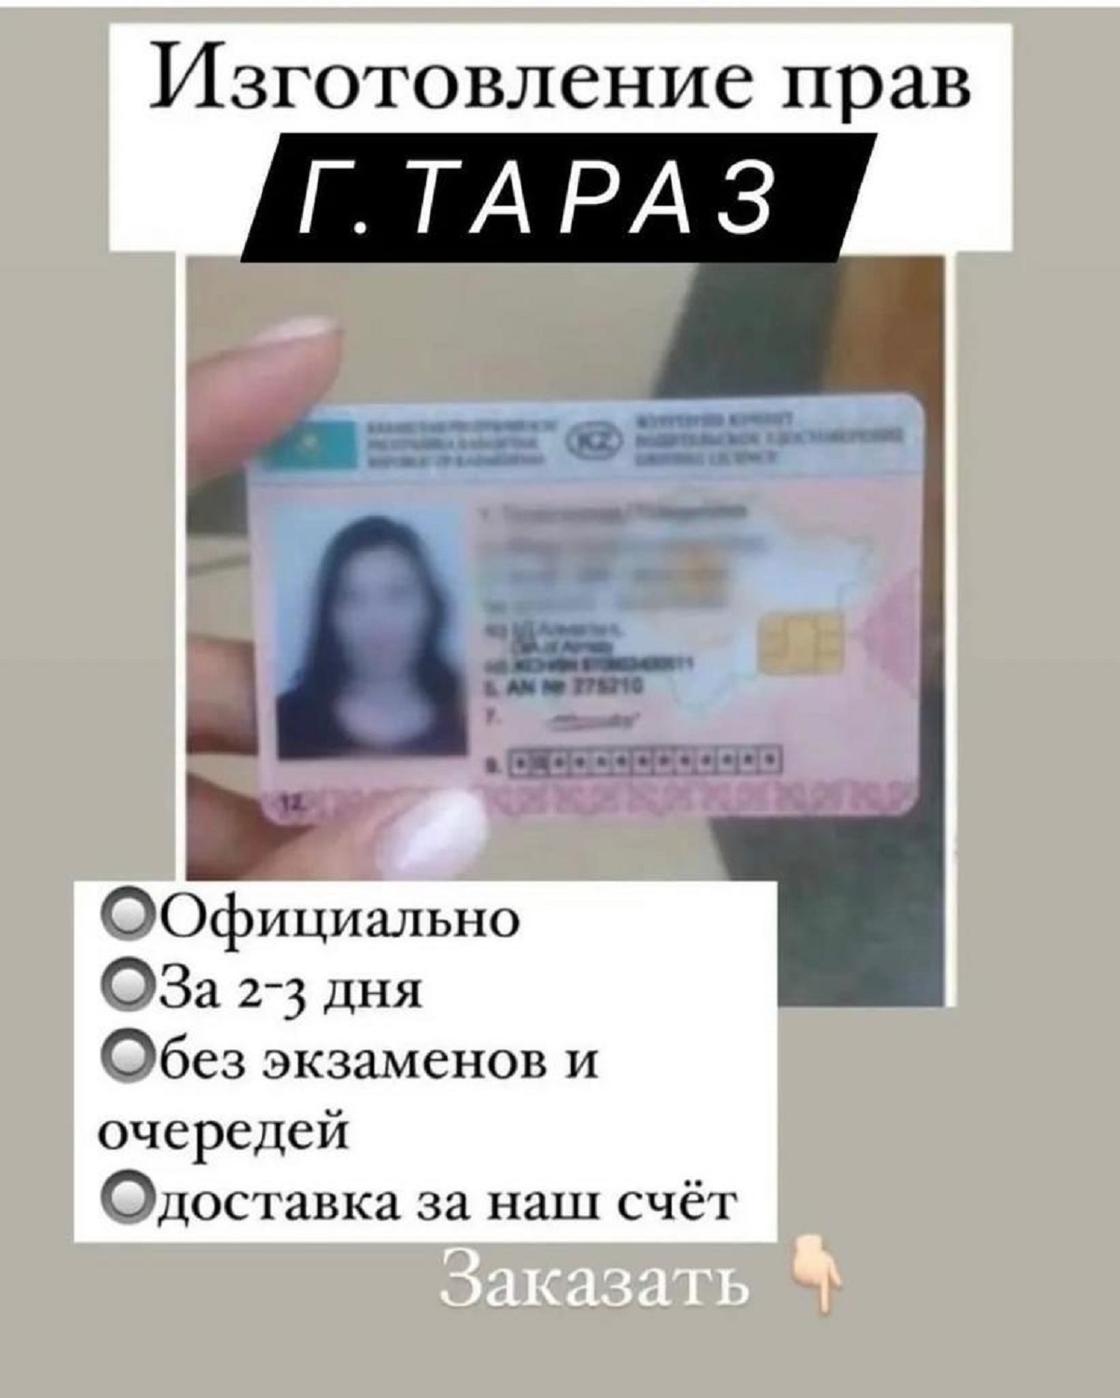 новое водительское удостоверение в казахстане